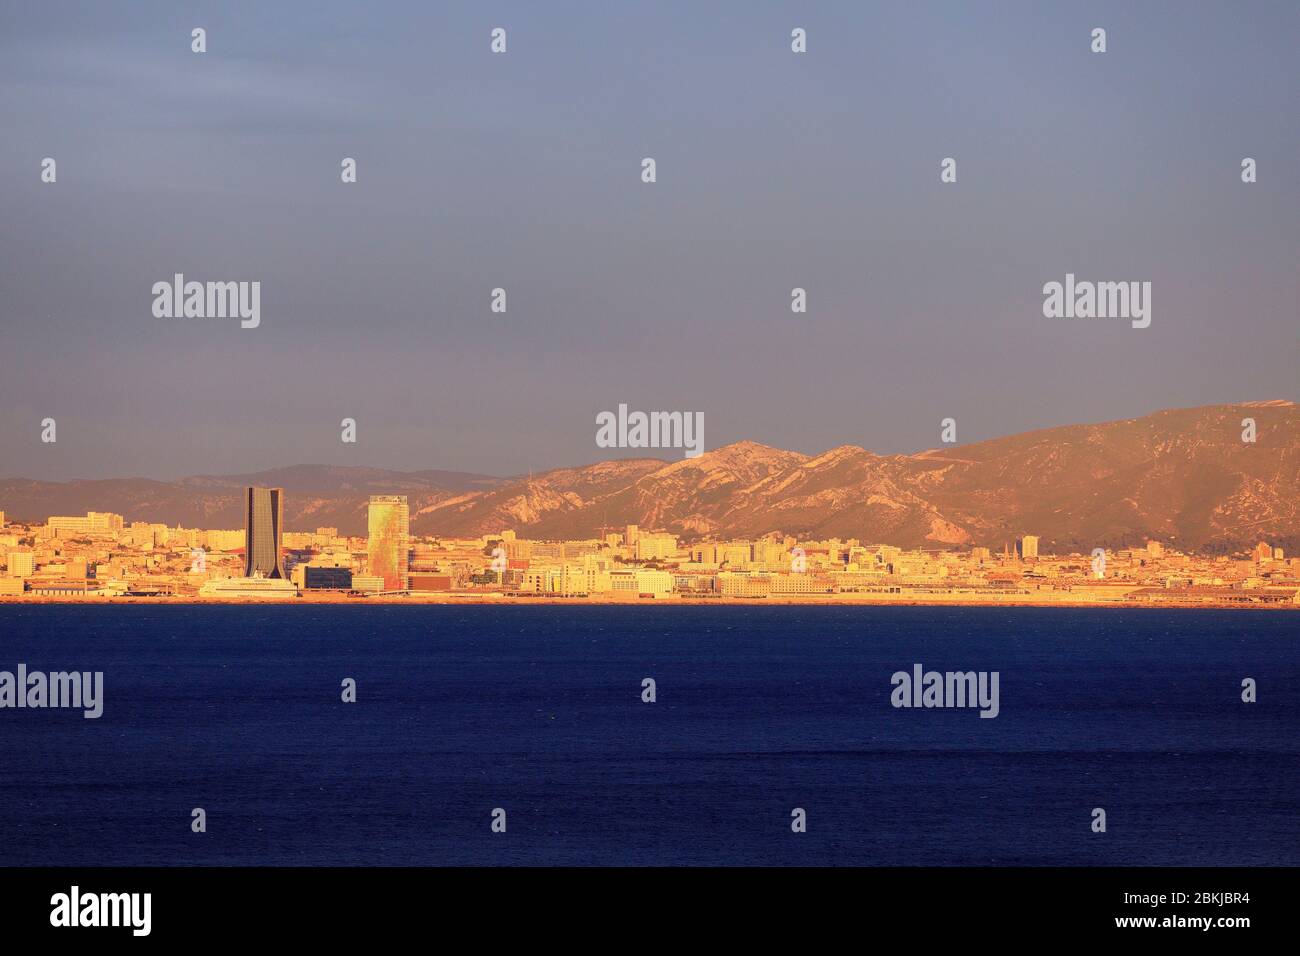 Frankreich, Bouches du Rhone, Marseille und sein Hafen, der CMA CGM Turm, die Architektin Zaha Hadid und La Marseillaise Turm, der Architekt Jean Nouvel im Hintergrund Stockfoto